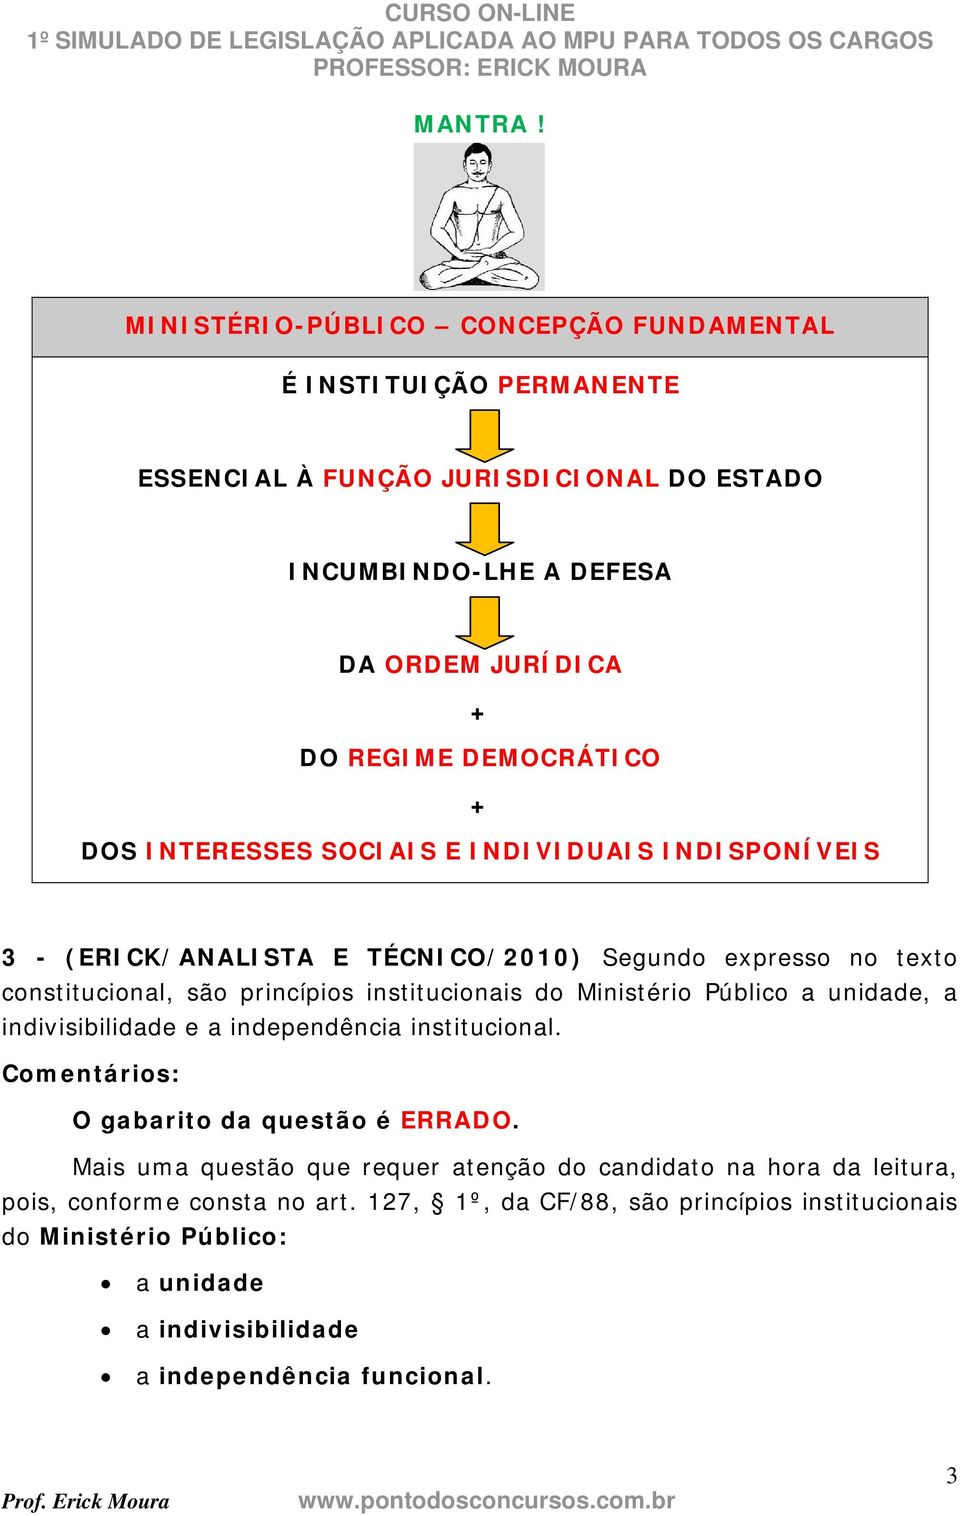 DEMOCRÁTICO DOS INTERESSES SOCIAIS E INDIVIDUAIS INDISPONÍVEIS 3 - (ERICK/ANALISTA E TÉCNICO/2010) Segundo expresso no texto constitucional, são princípios